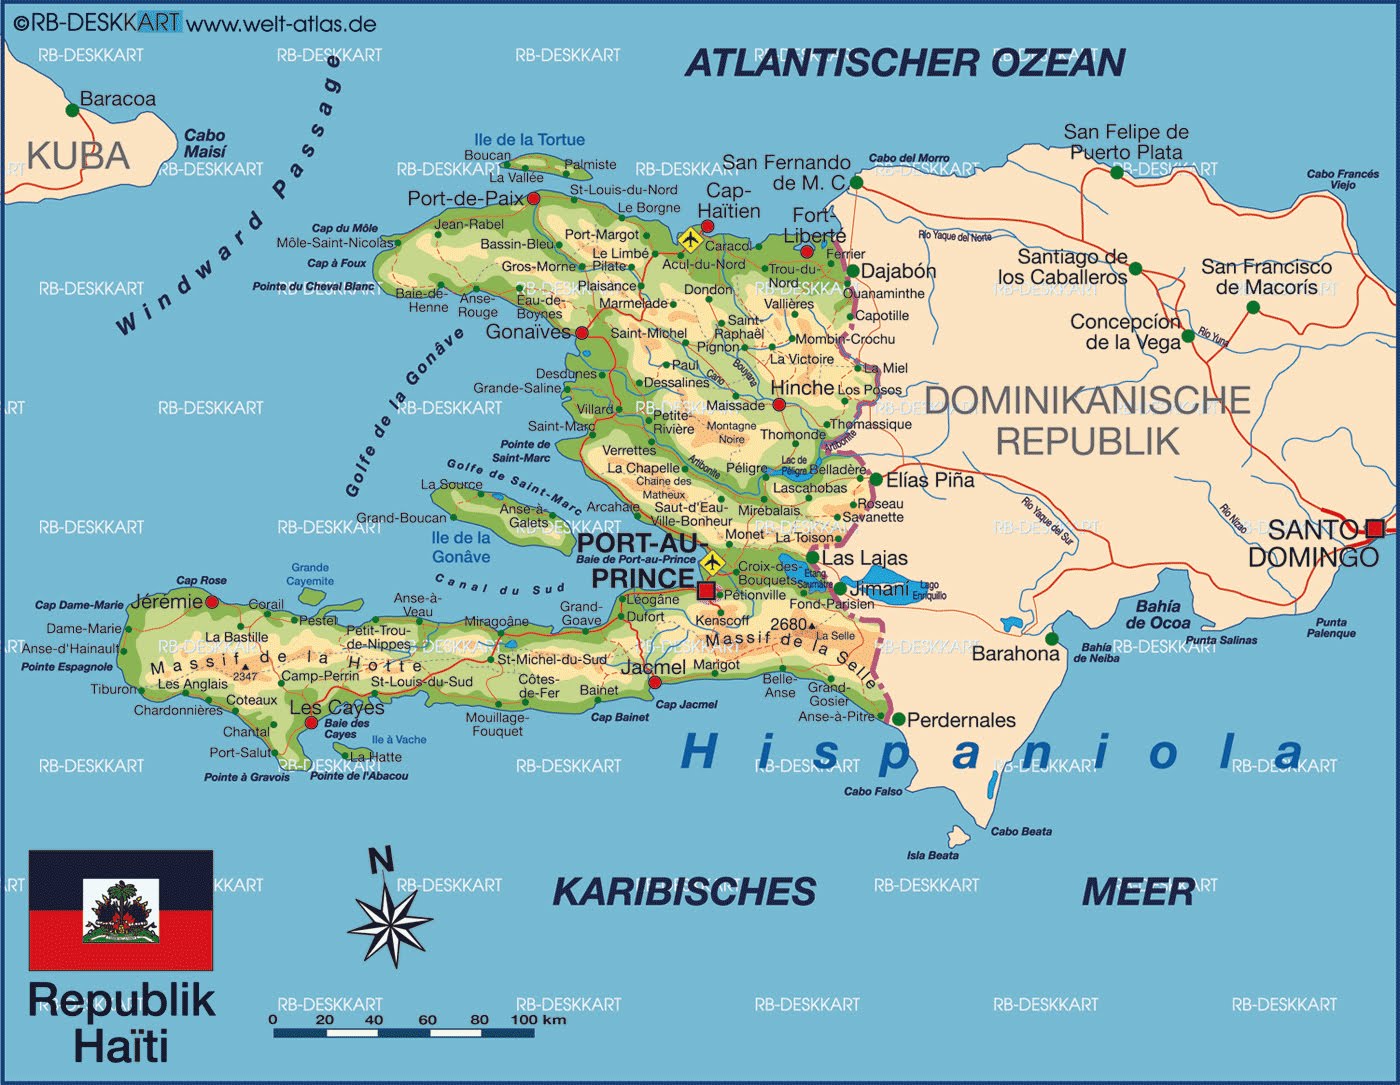 Haiti's Map